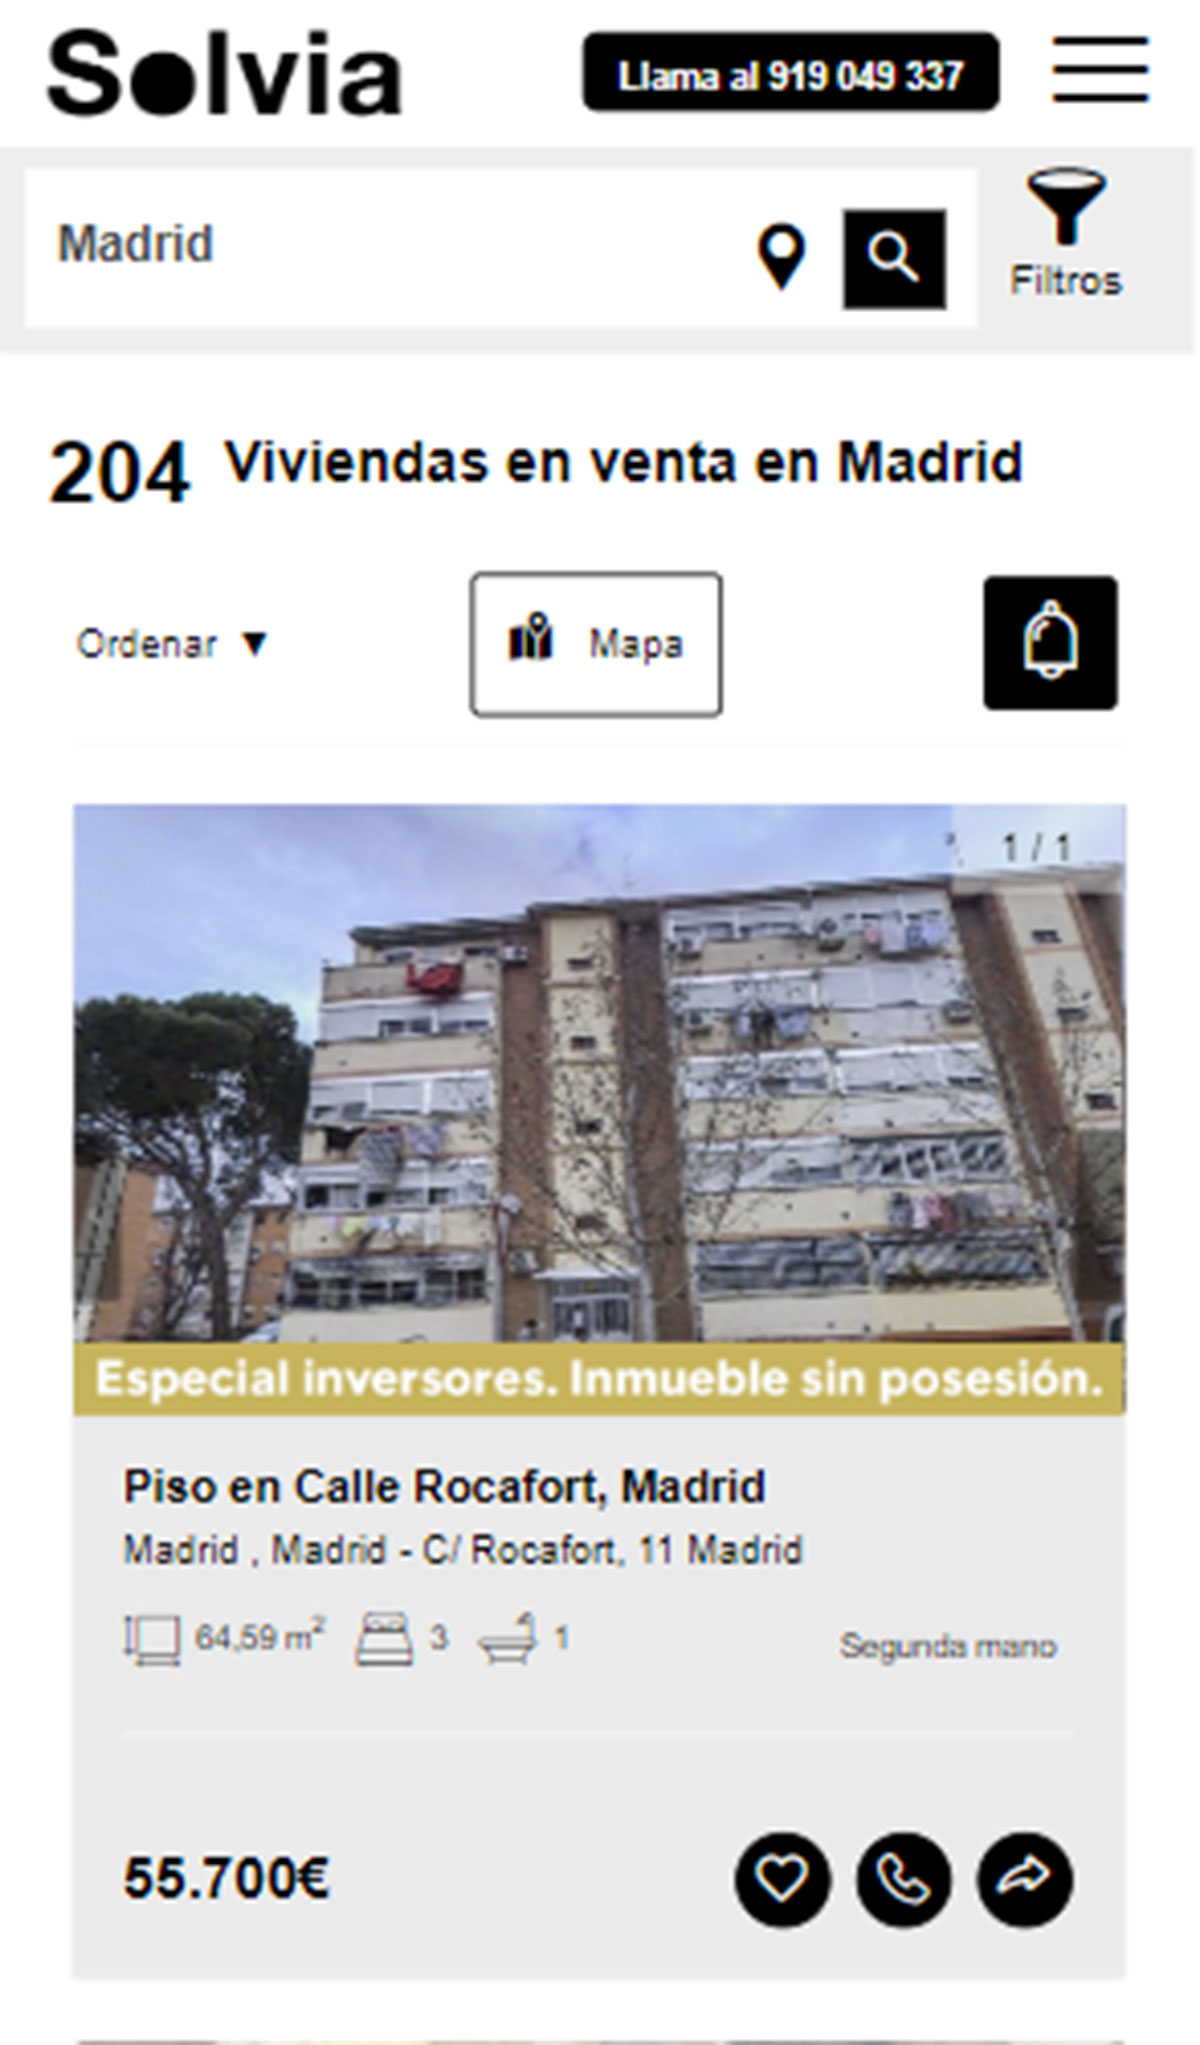 Piso en la ciudad de Madrid por 55.700 euros